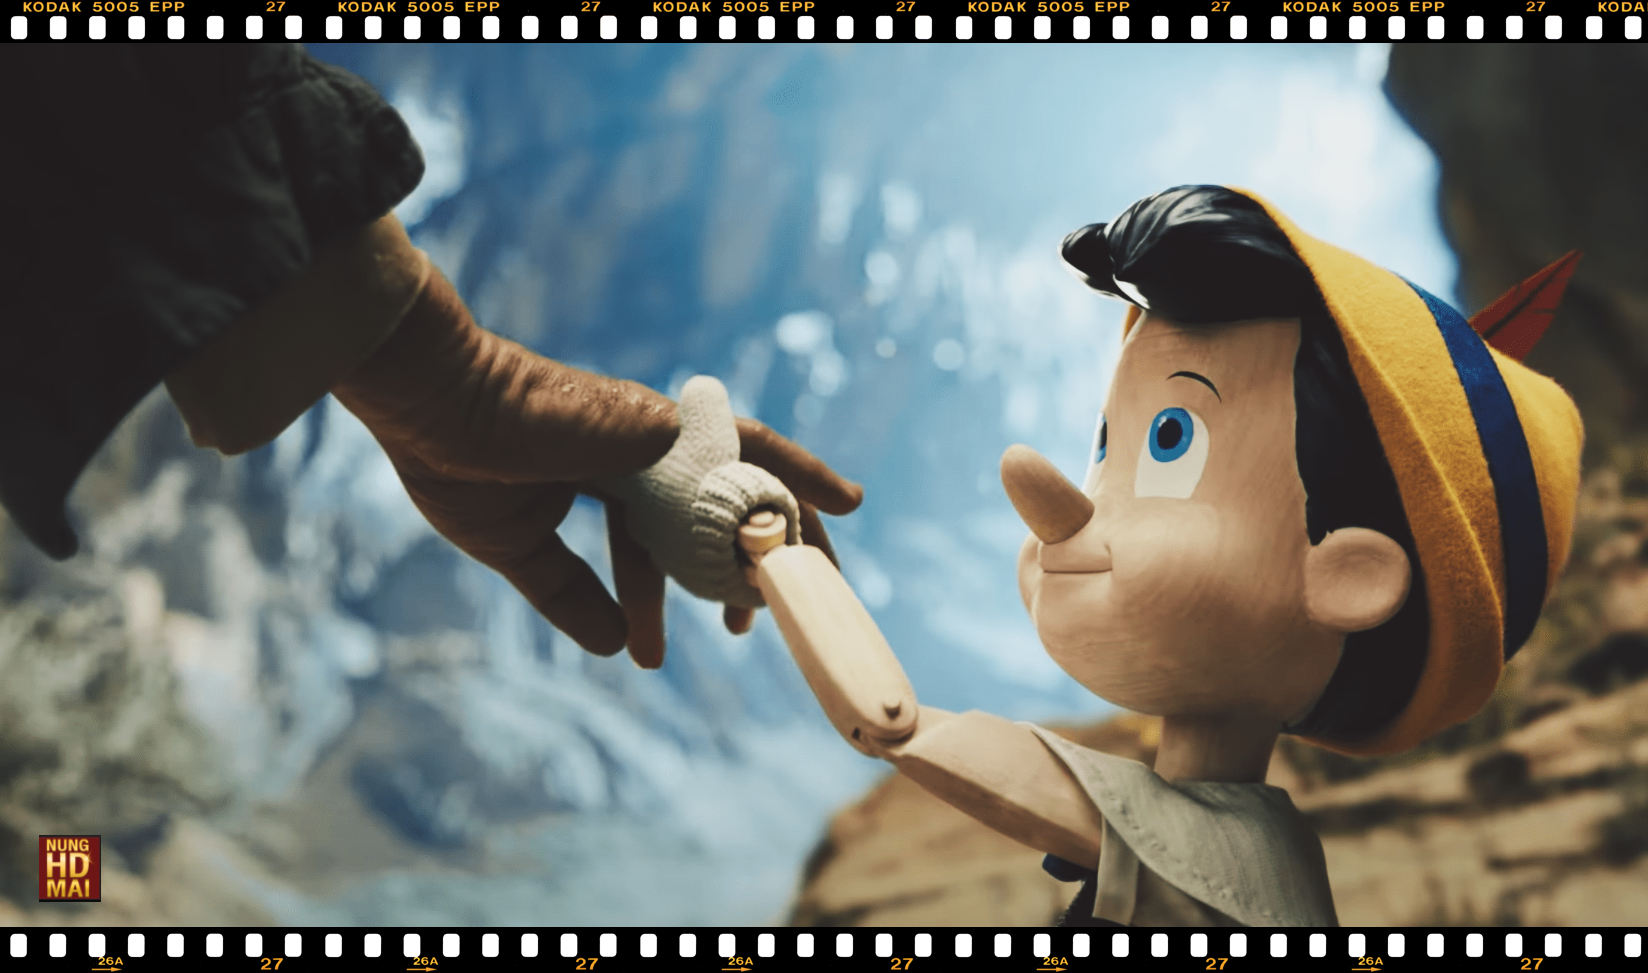 รีวิวหนัง Pinocchio หุ่นไม้ที่มีชีวิตจริง สนุก